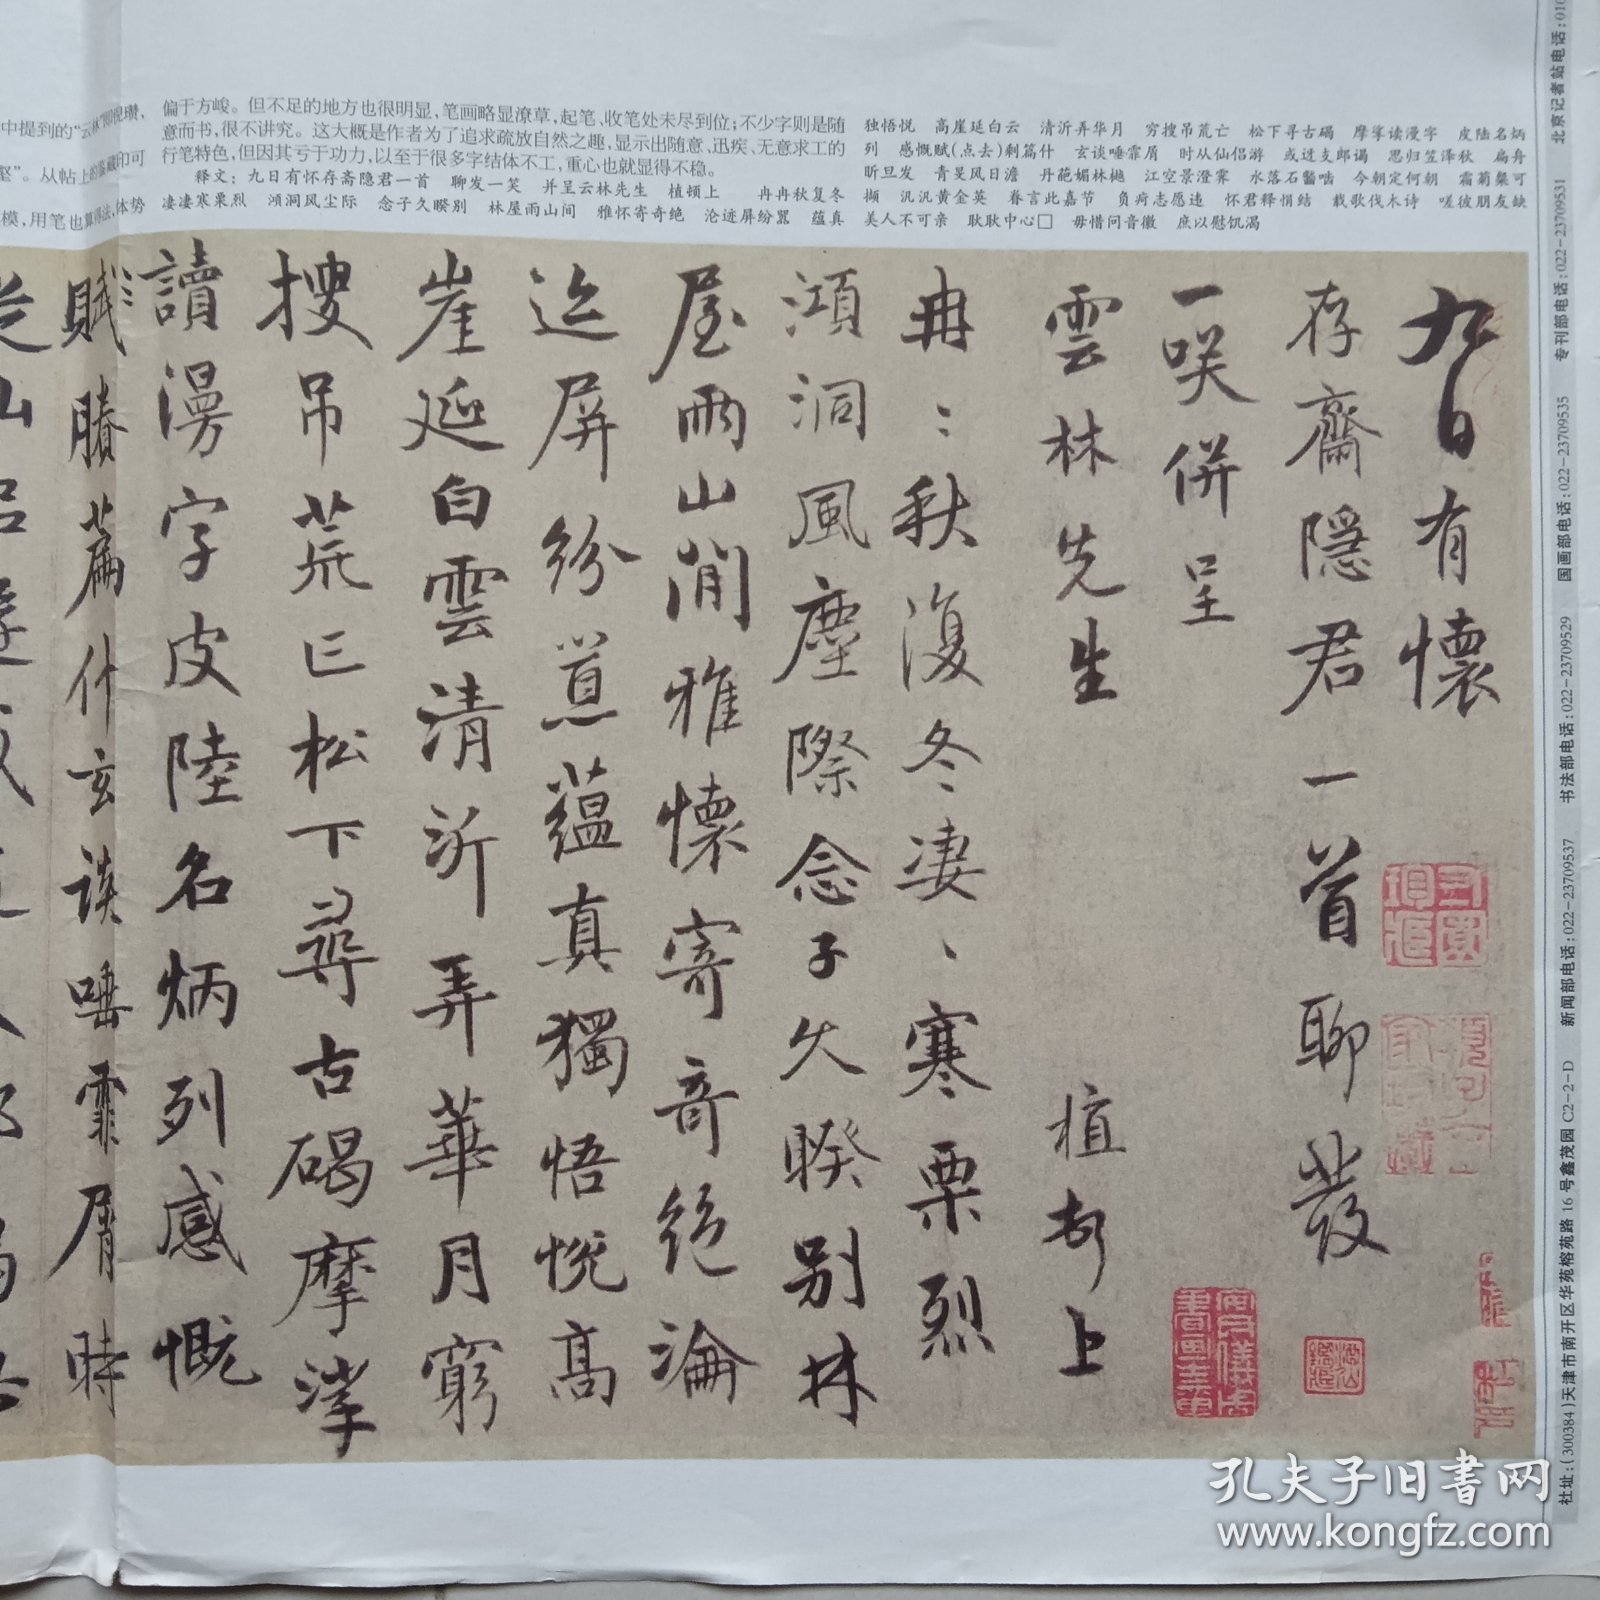 中国书画报 （2013年第 82 期）陈植 书《怀存斋诗帖》，10份之内只收一个运费